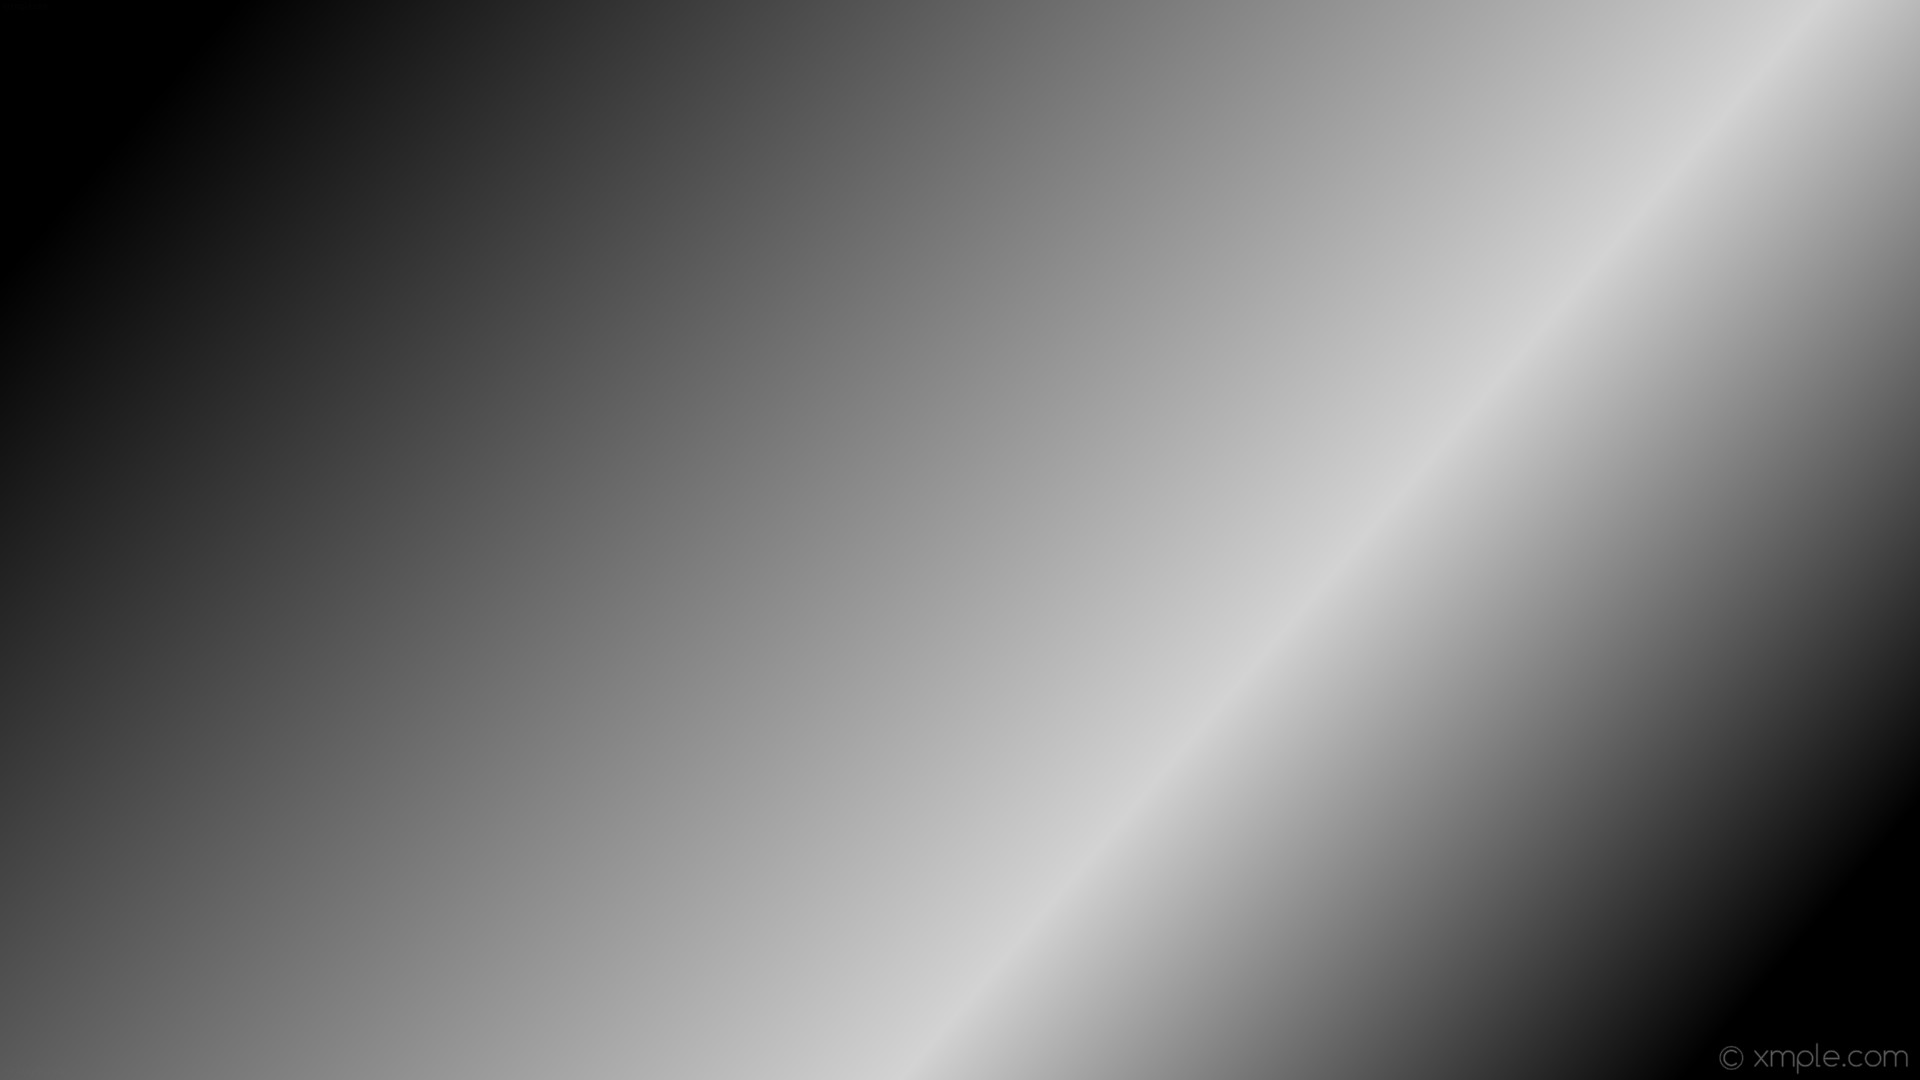 1920x1080 wallpaper linear highlight black gradient grey light gray #000000 #d3d3d3  165Â° 67%